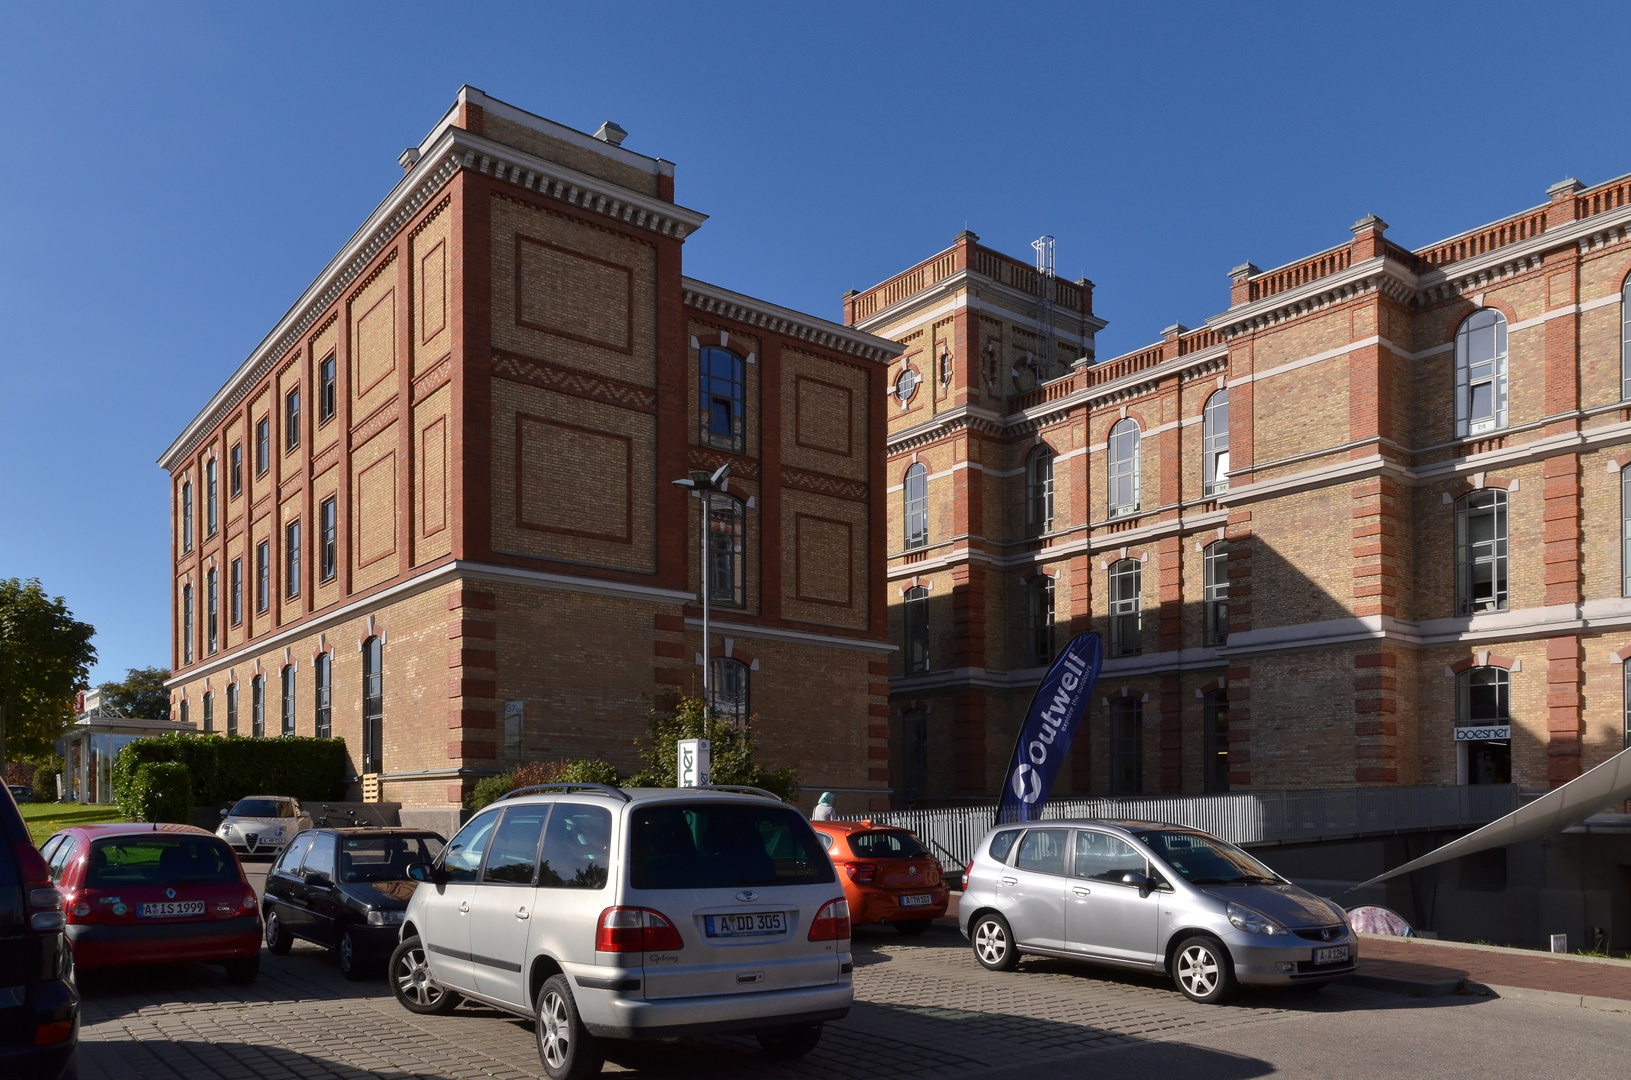 Fabrikschloss_2, Augsburg, Oktober 2014